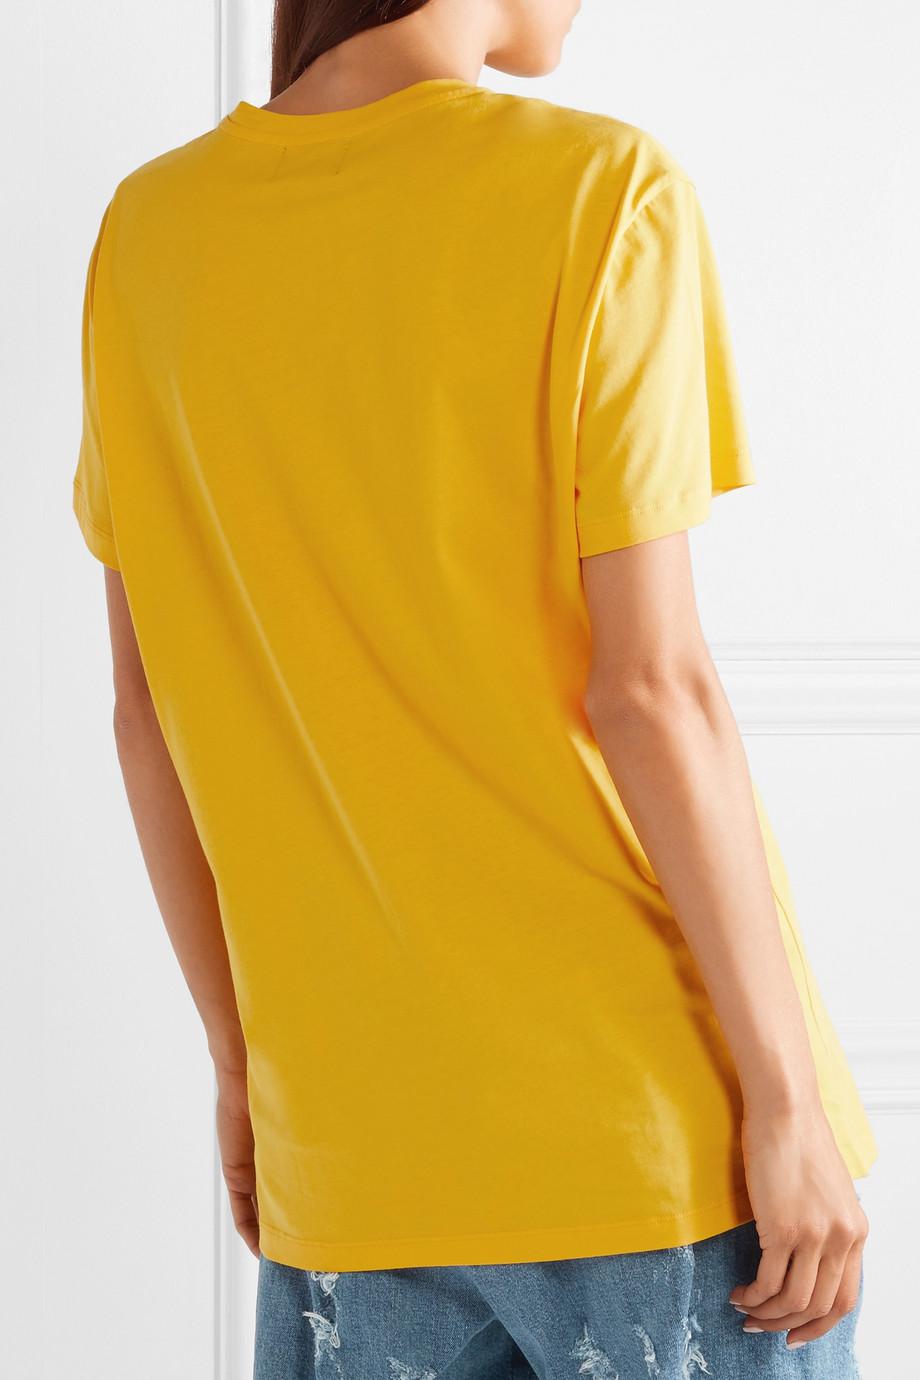 Balmain + Beyoncé Coachella Printed Cotton-jersey T-shirt in Yellow | Lyst